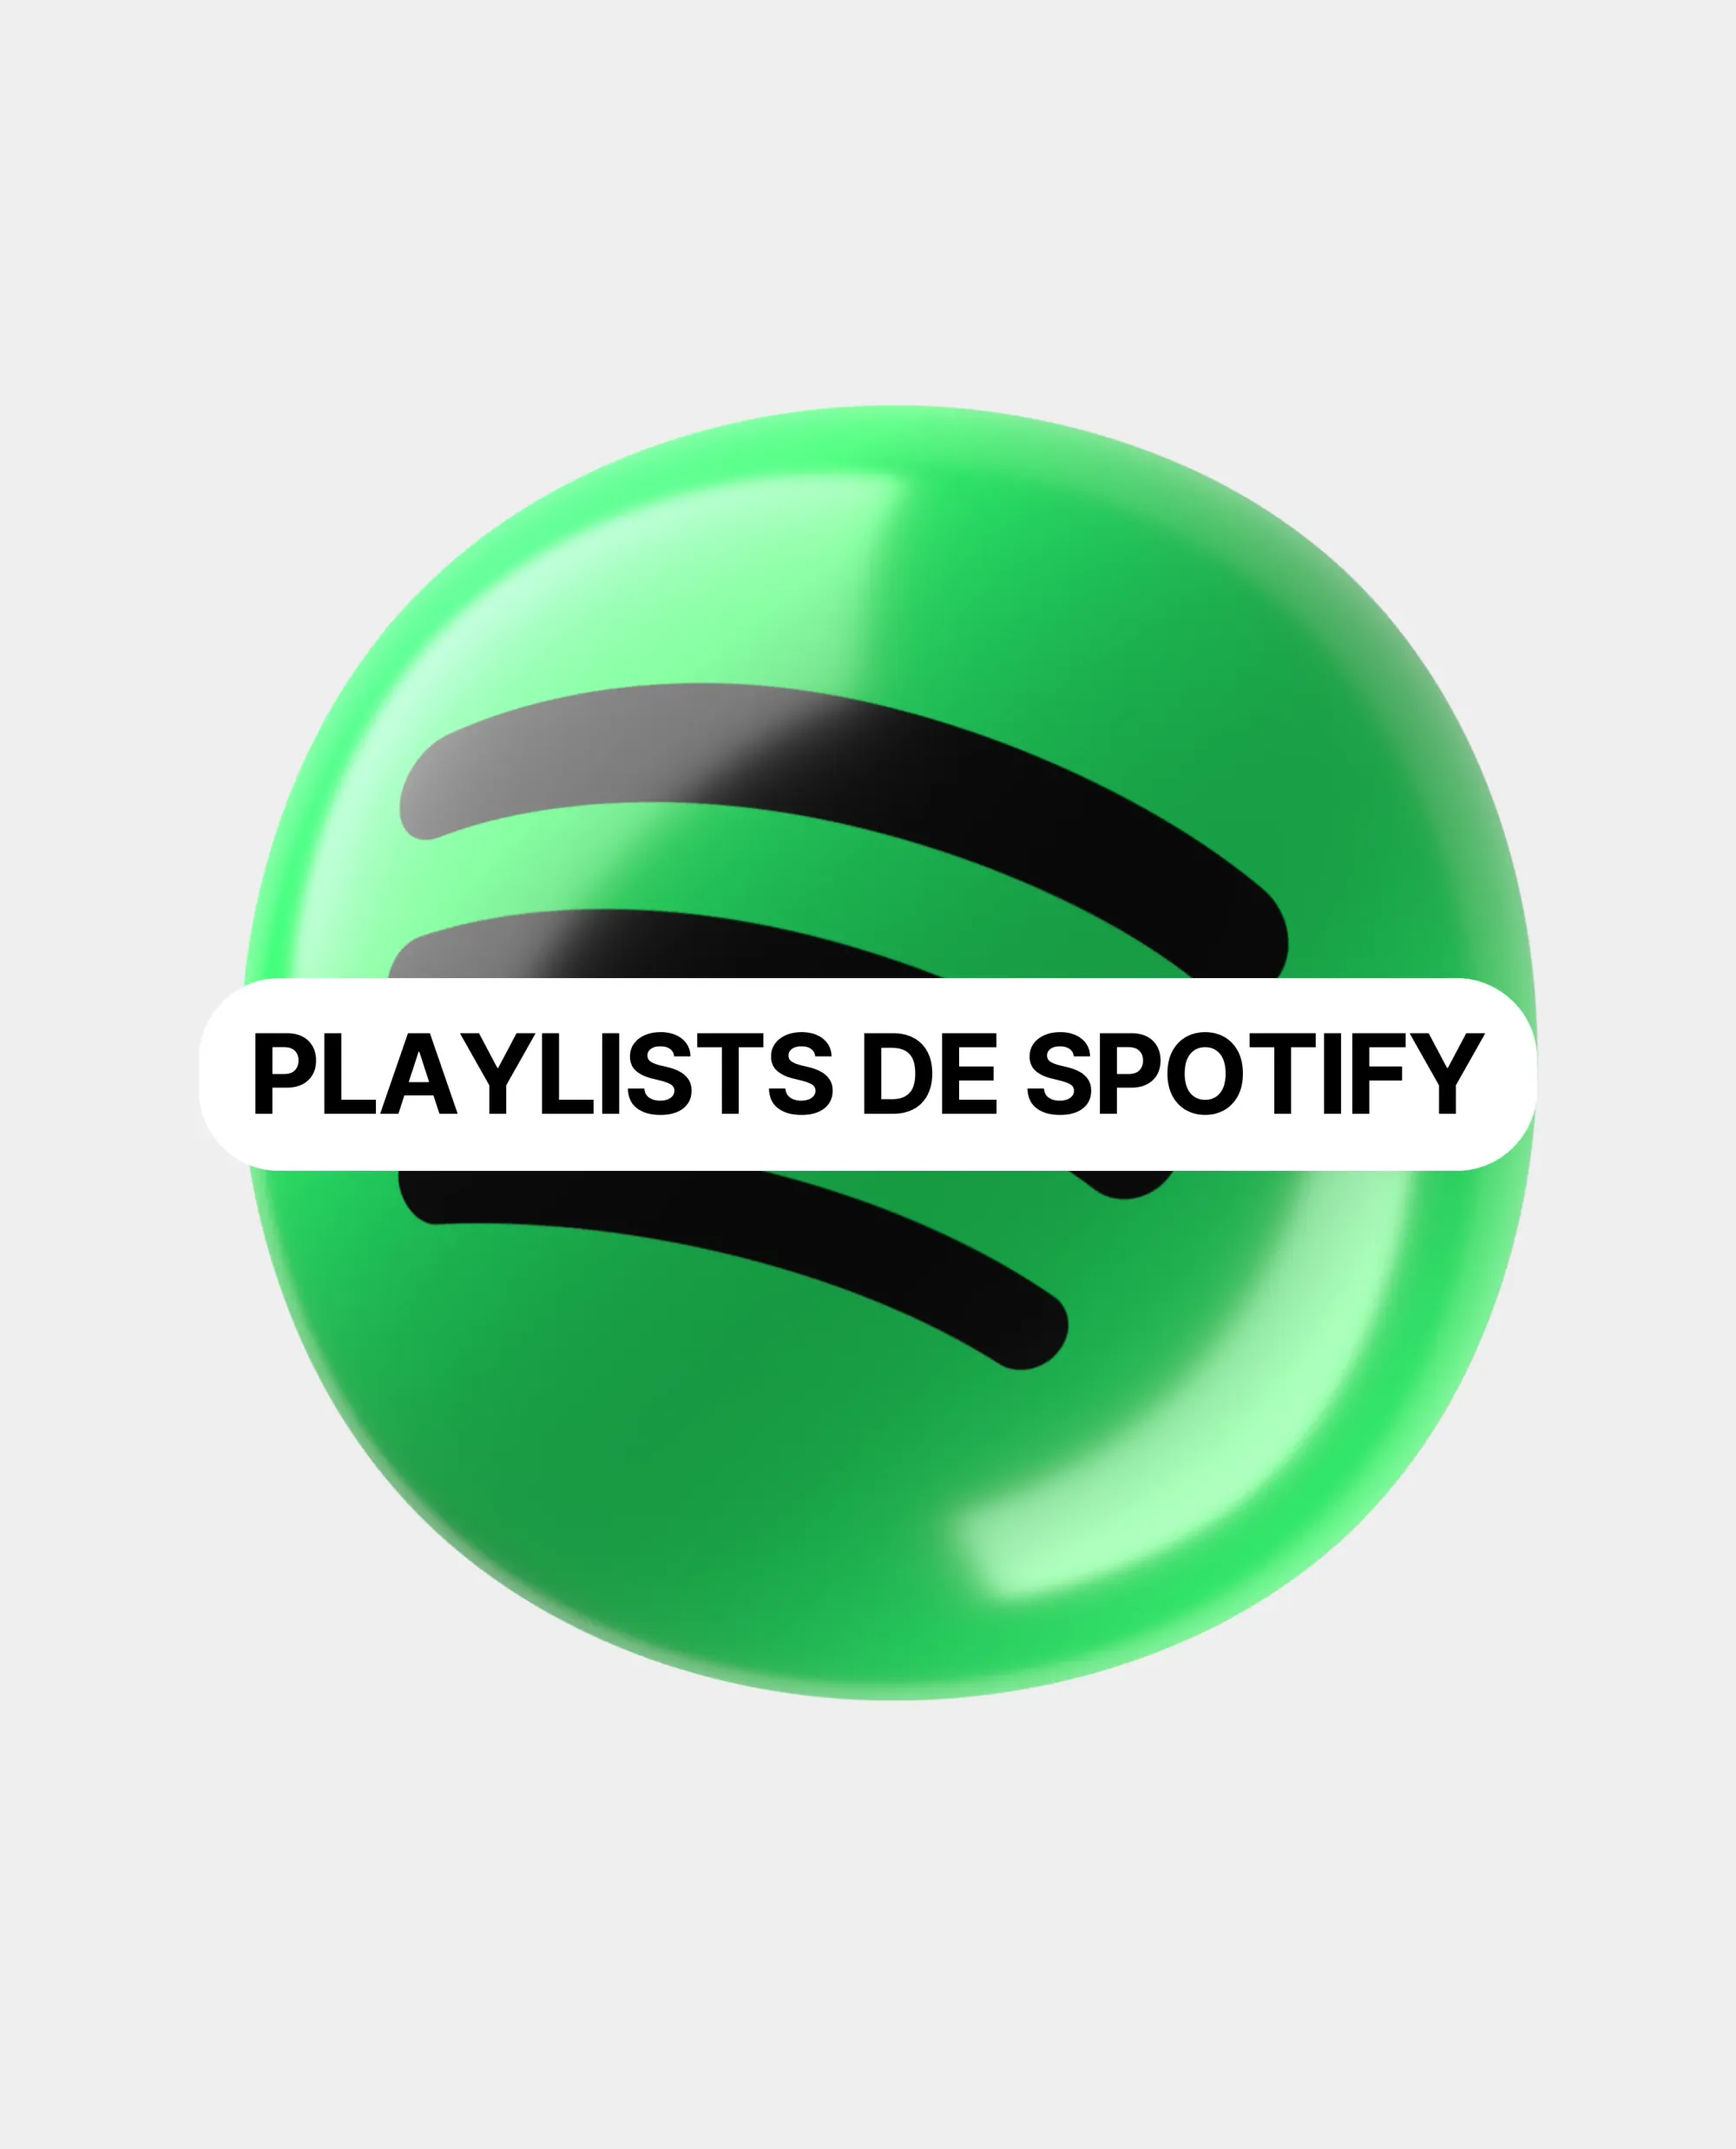 Playlists de Spotify: modelo de negocio